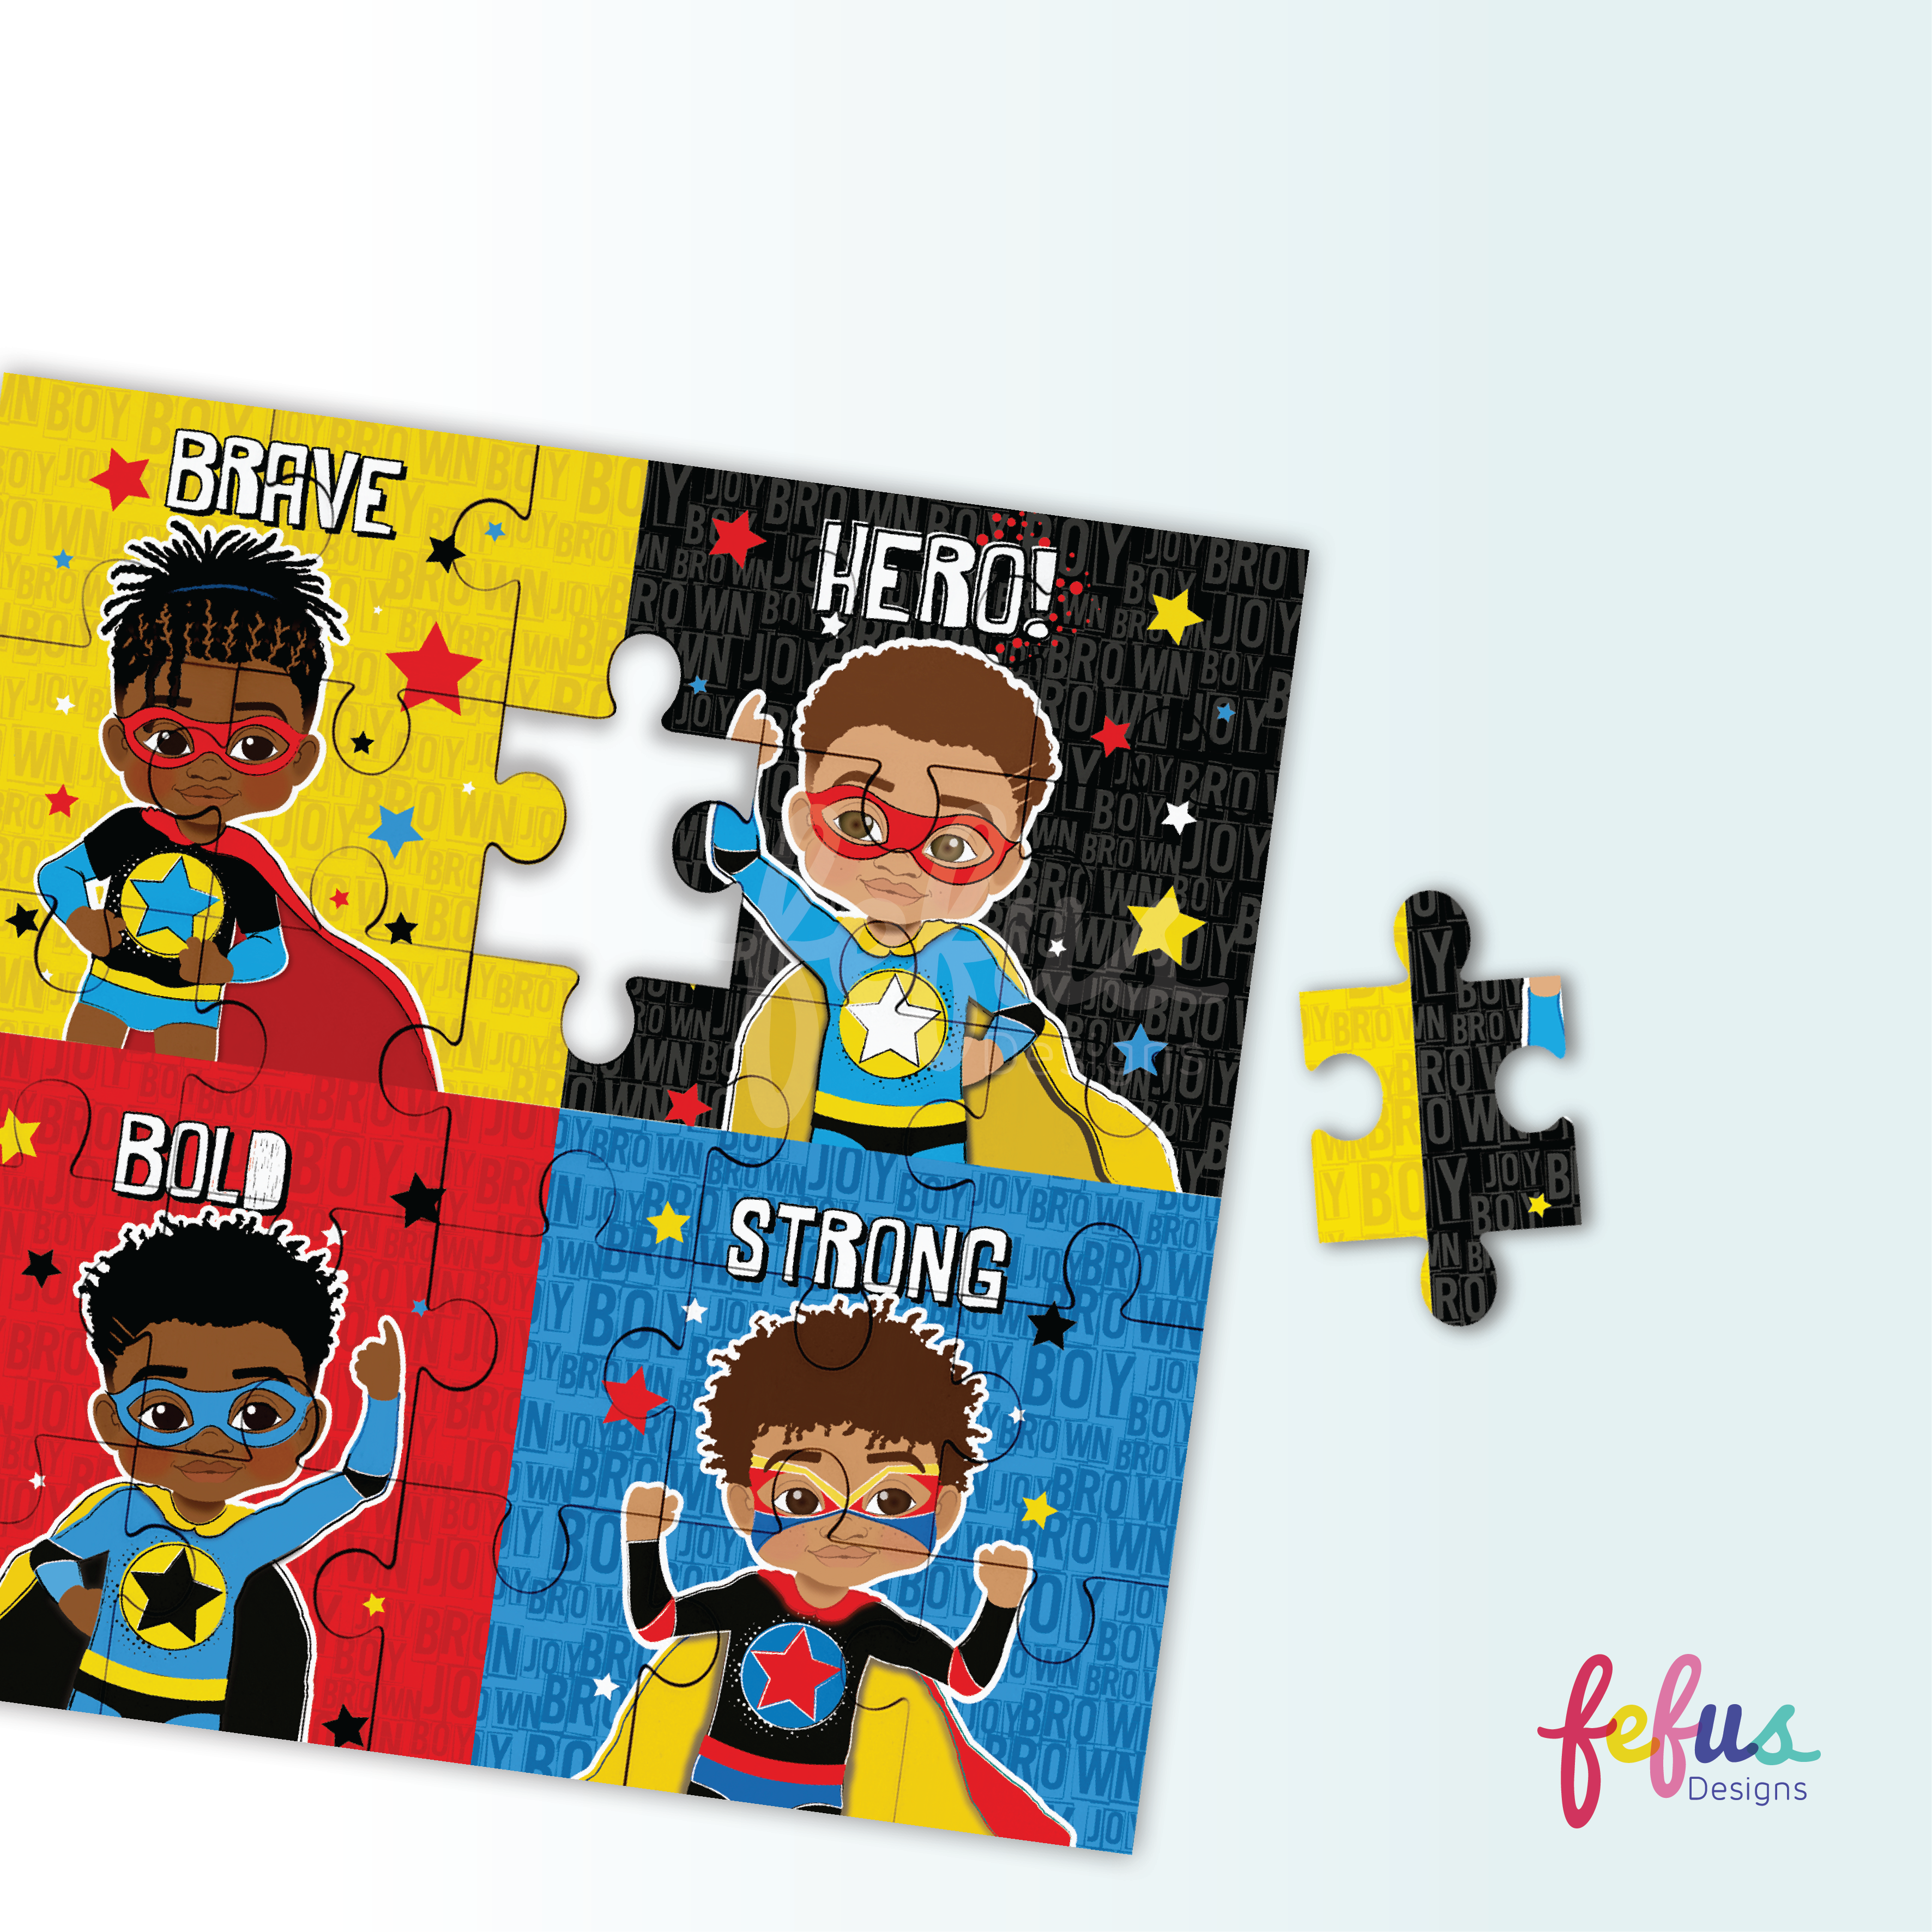 Melanin Boy Magic Puzzle - Black Superhero Jigsaw Square Puzzle for Kids - Premium 25pcs Wooden Puzzle by Fefus Designs